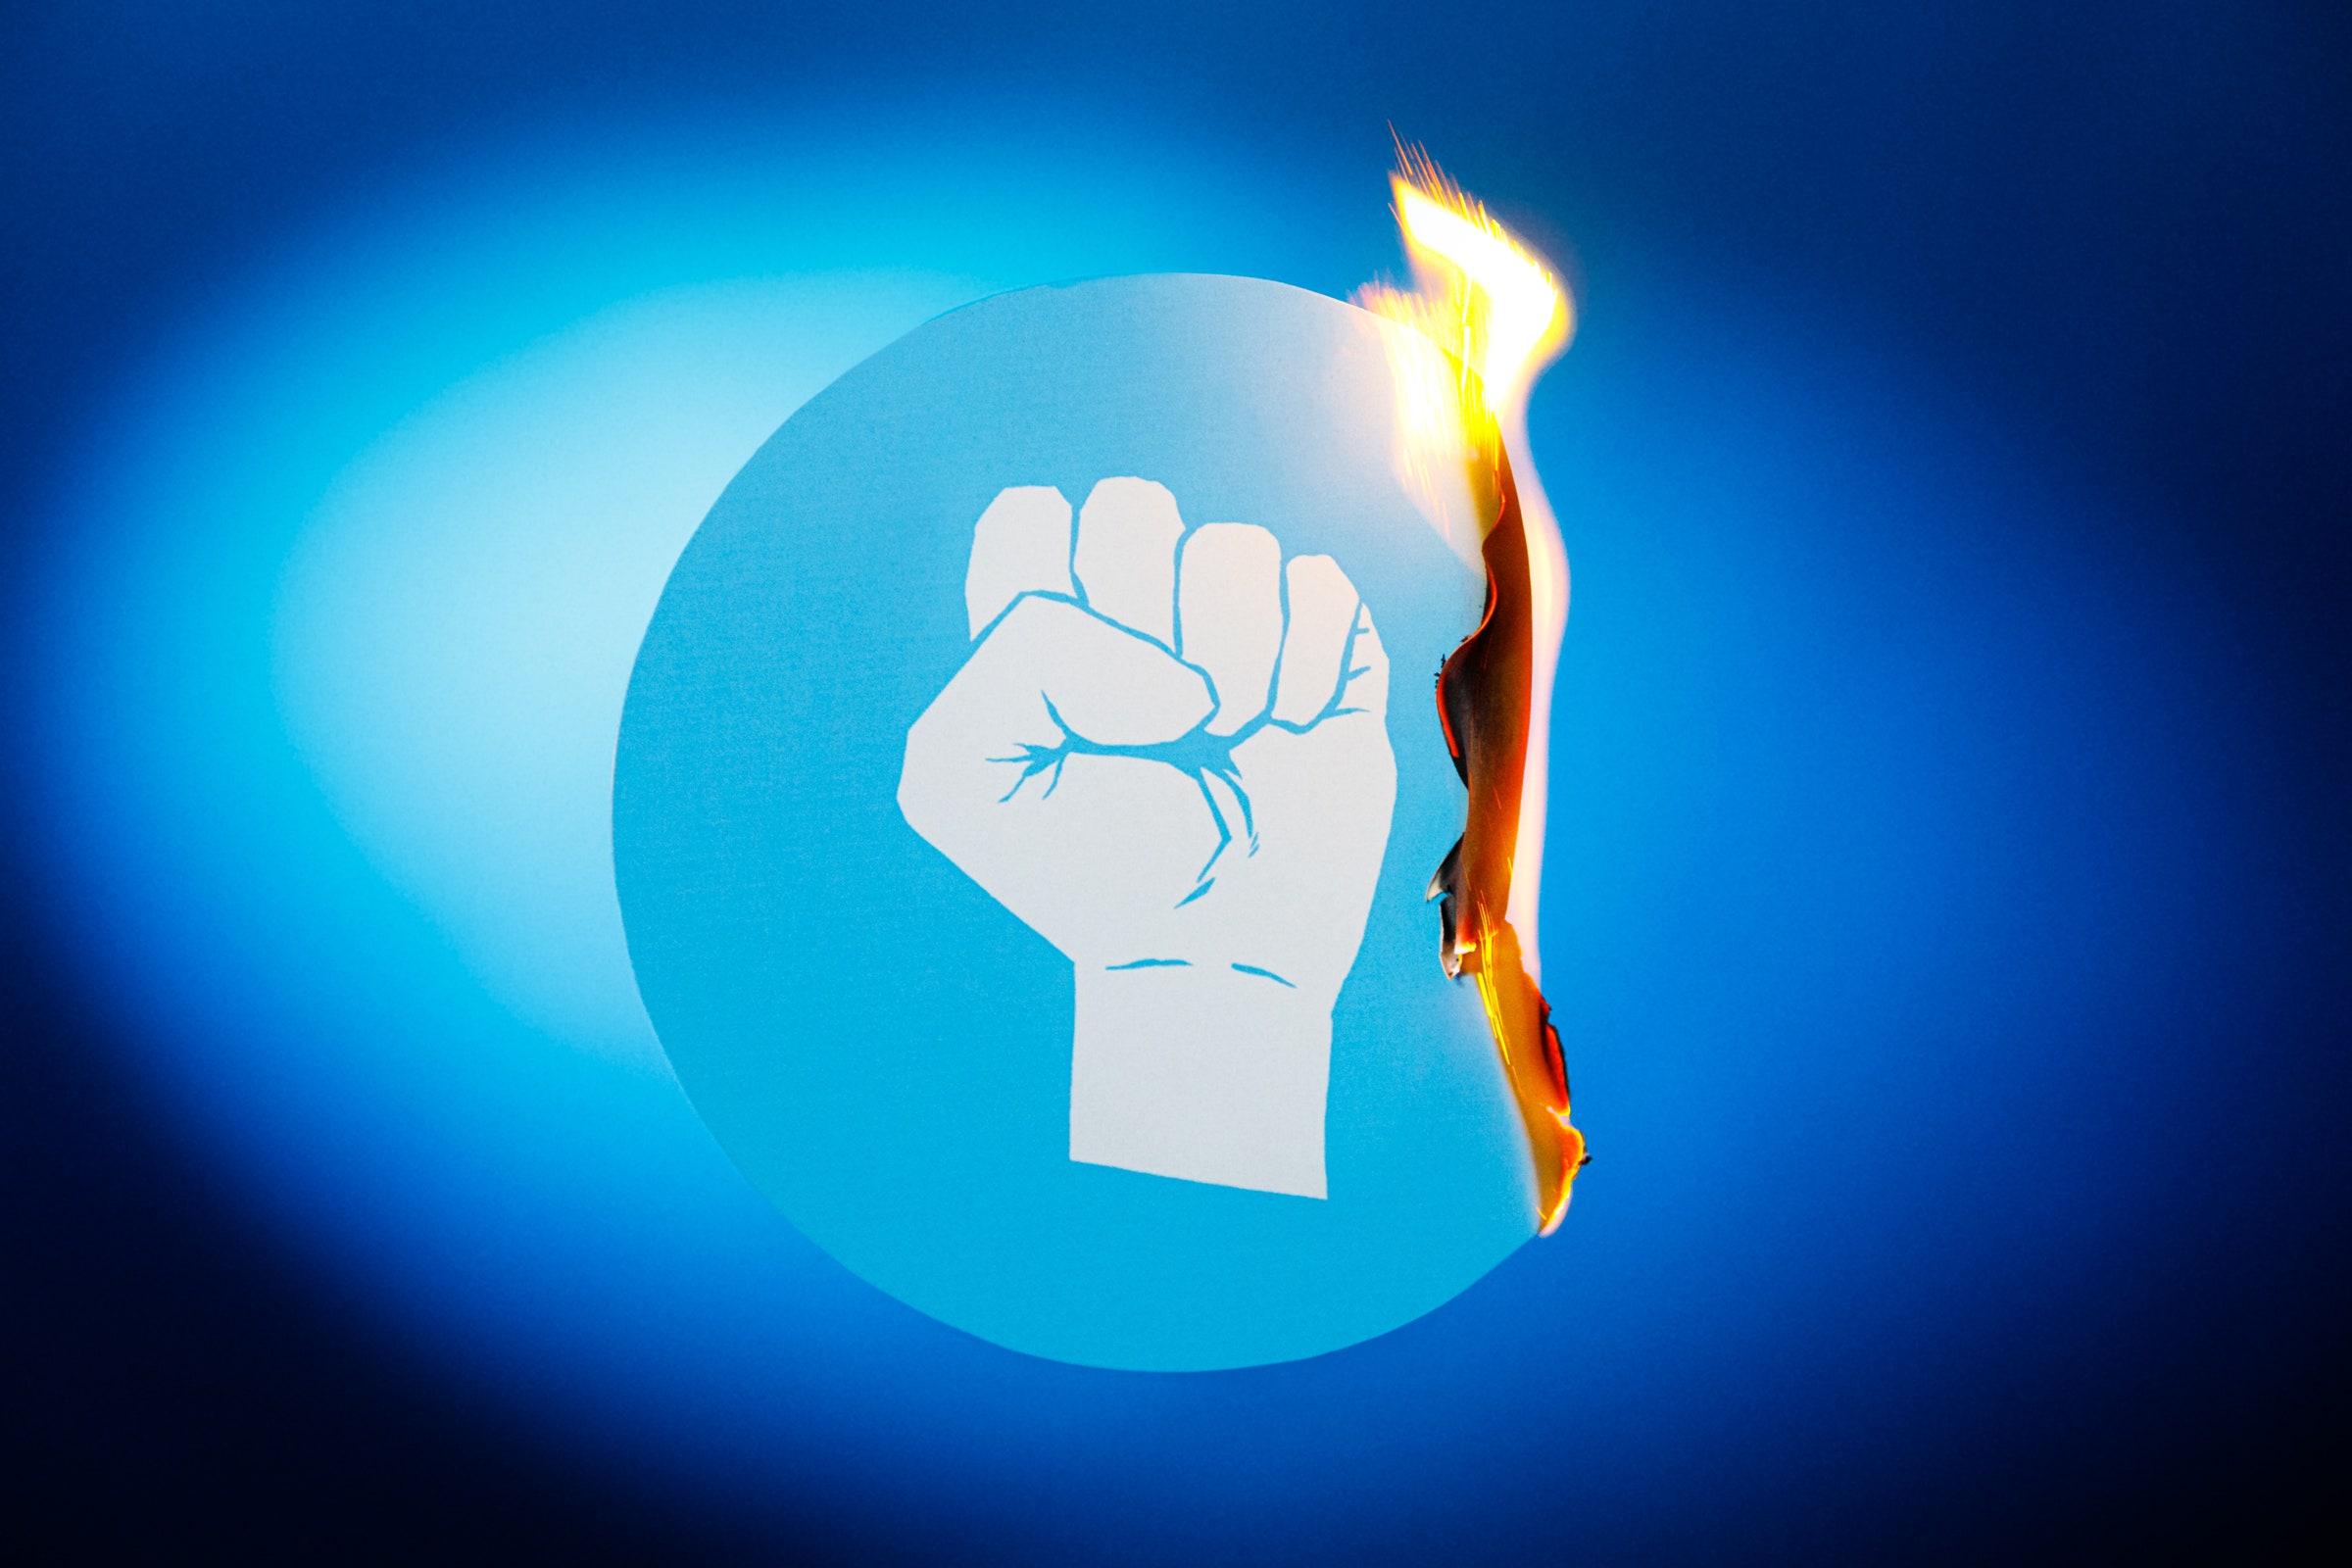 Ilustração de um punho espremido com um objeto em chamas